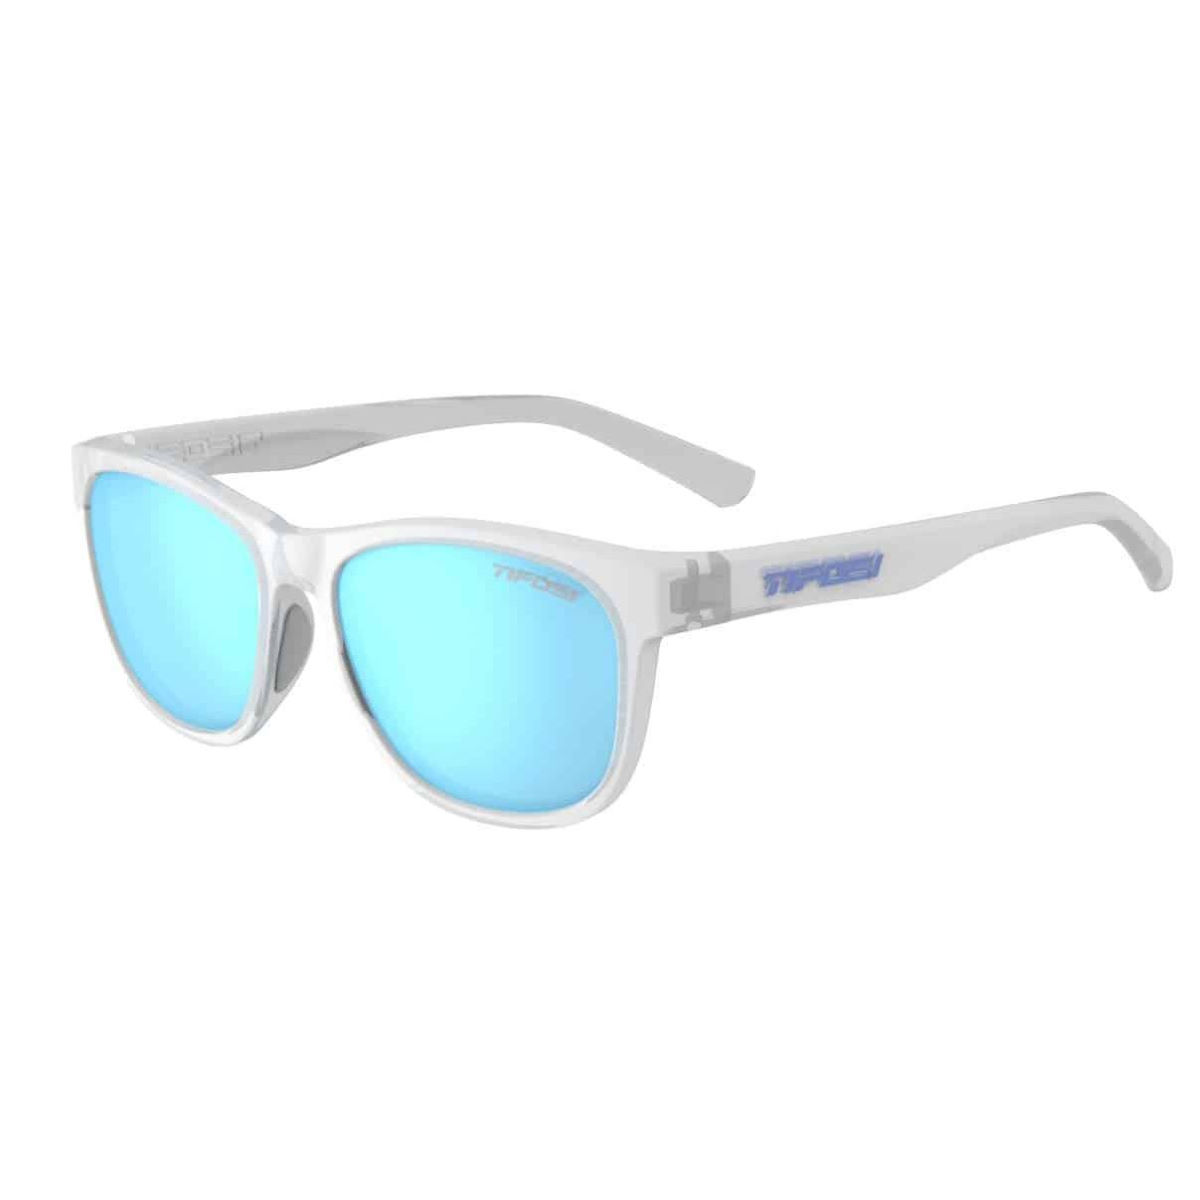 Gafas de sol Tifosi Eyewear Swank (con lentes polarizadas) - Gafas de sol